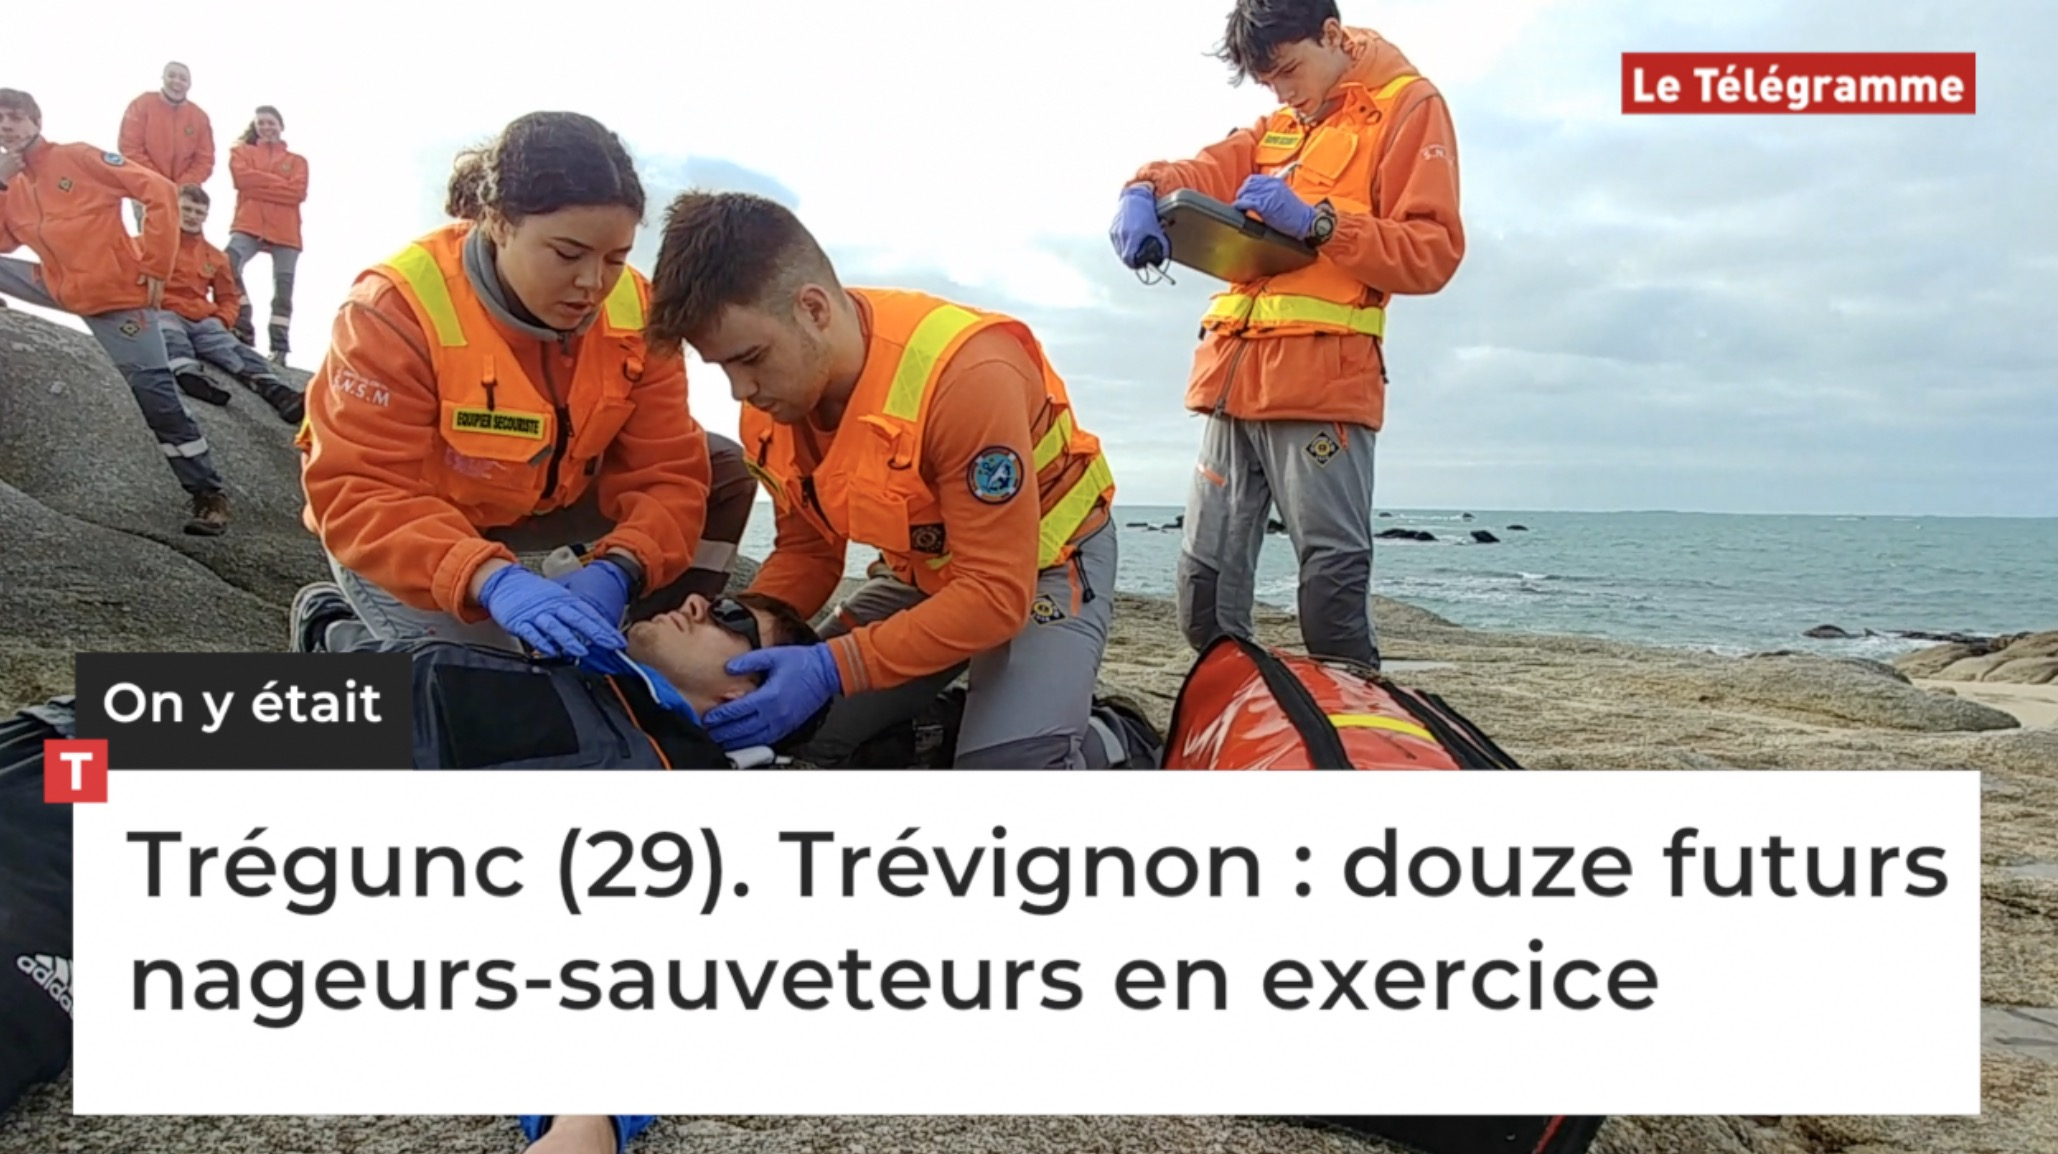 Trégunc (29). Douze futurs nageurs-sauveteurs en exercice à Trévignon (Le Télégramme)